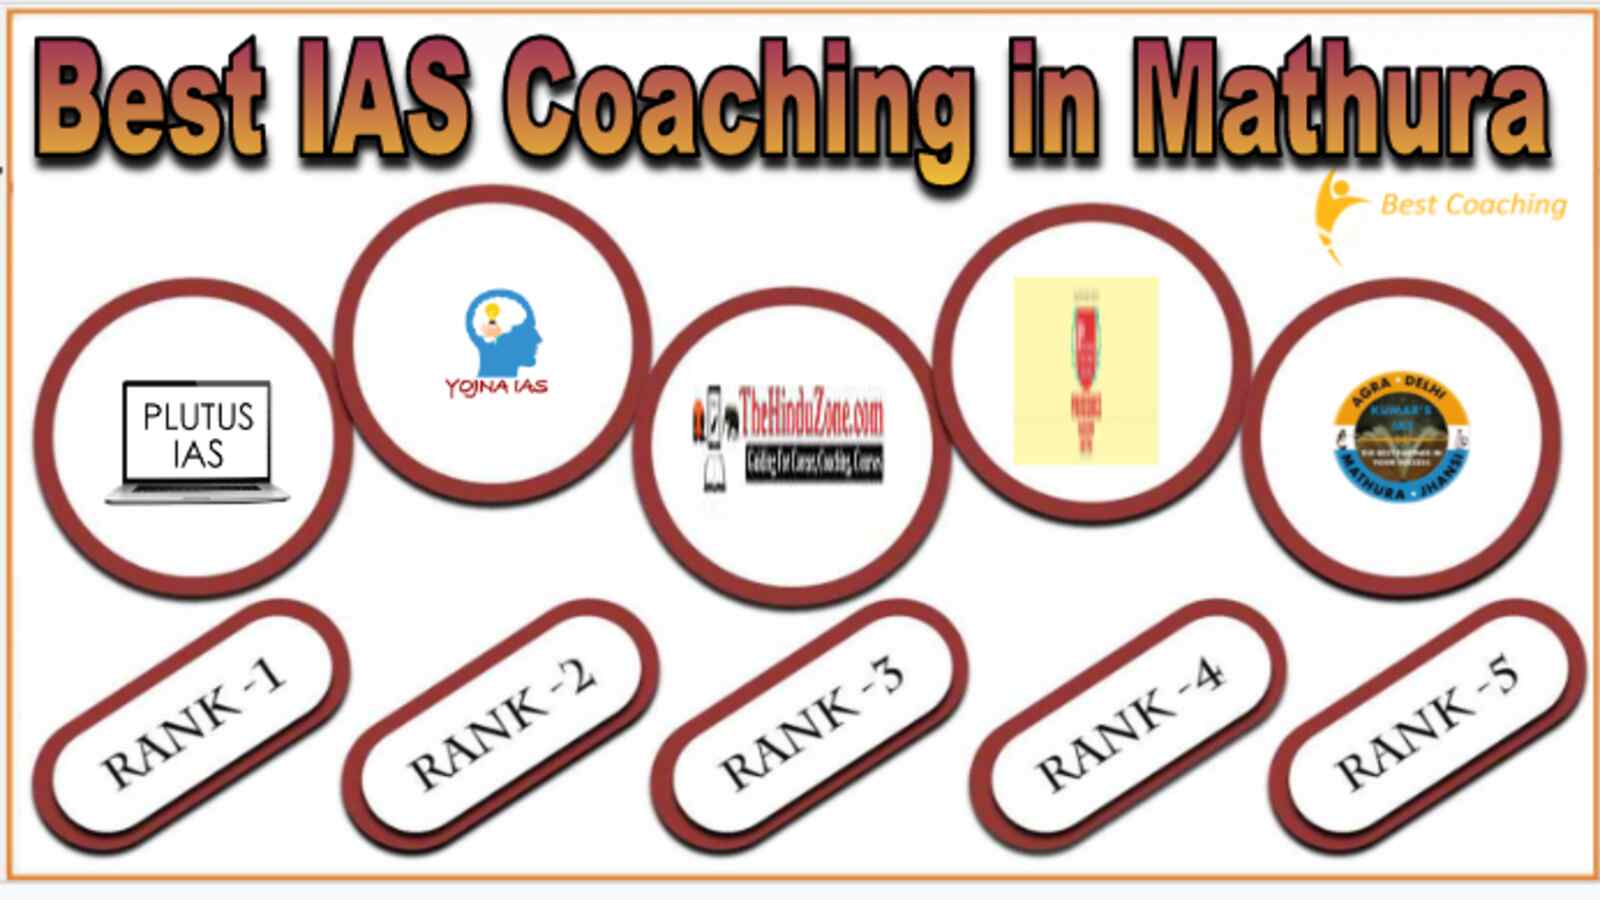 Best IAS Coaching in Mathura